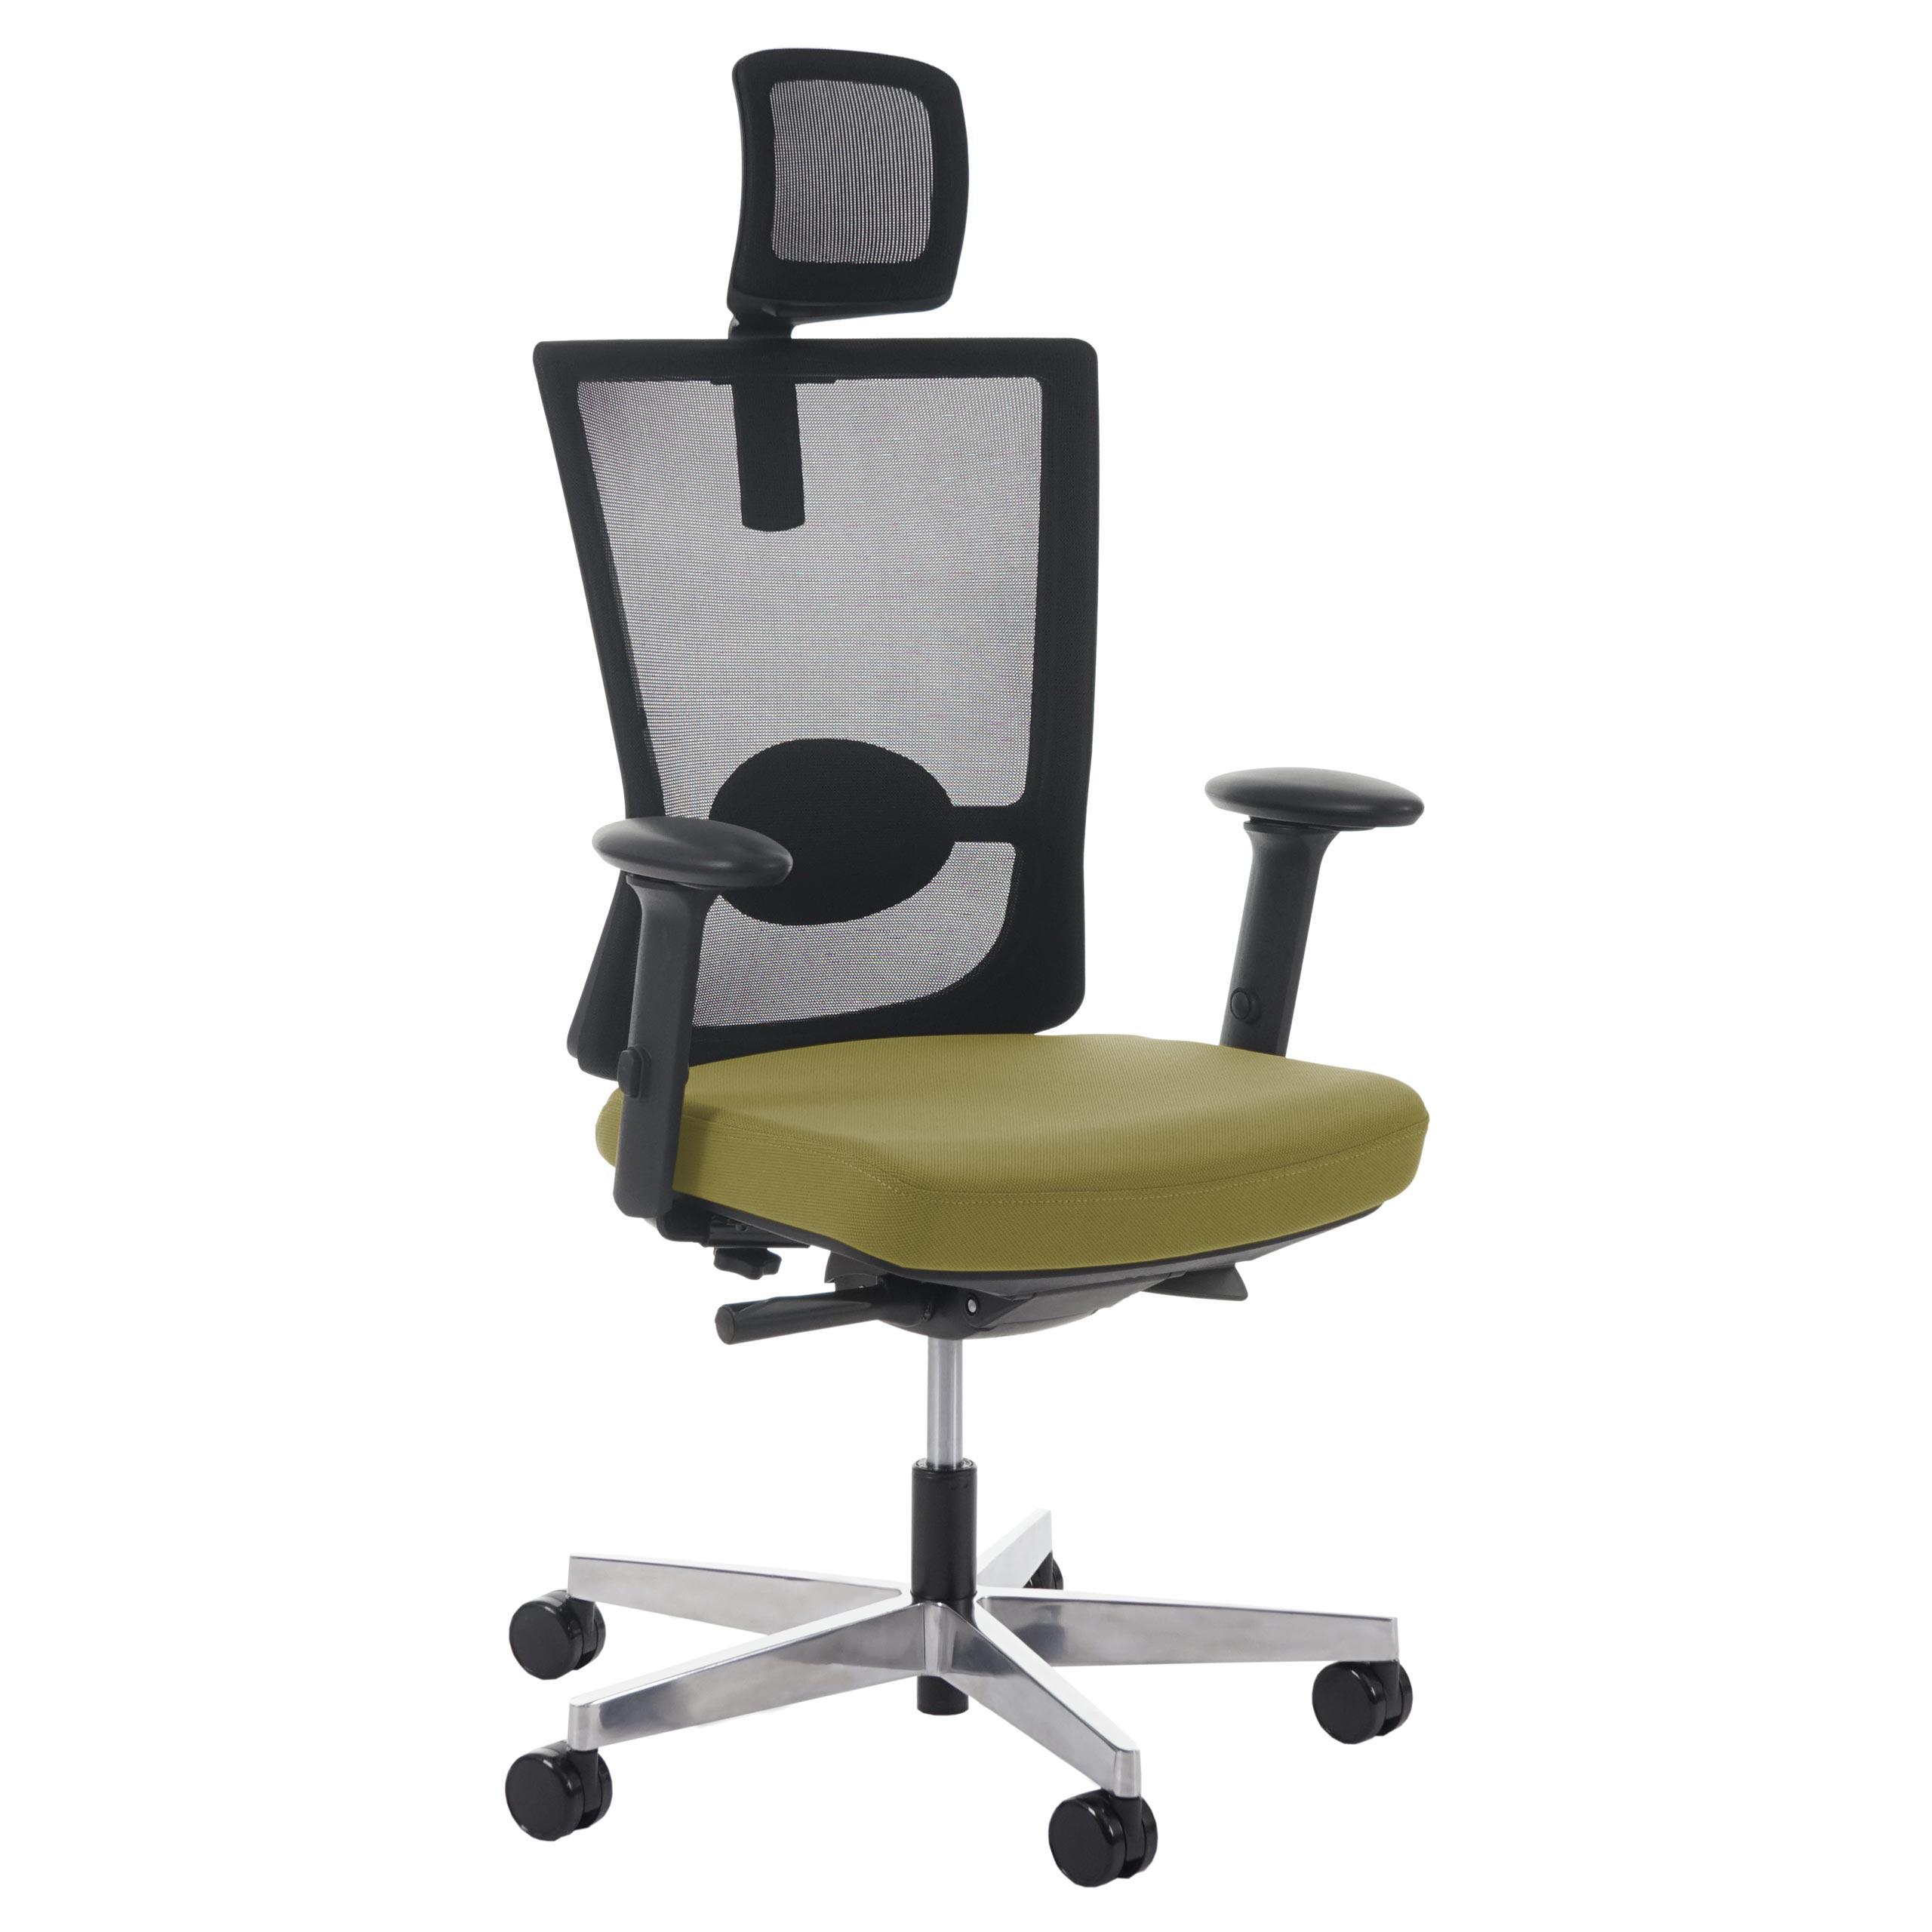 Chaise ergonomique NIL PRO, 100% Ajustable, Excellente Qualité, Utilisation 8 heures, Vert